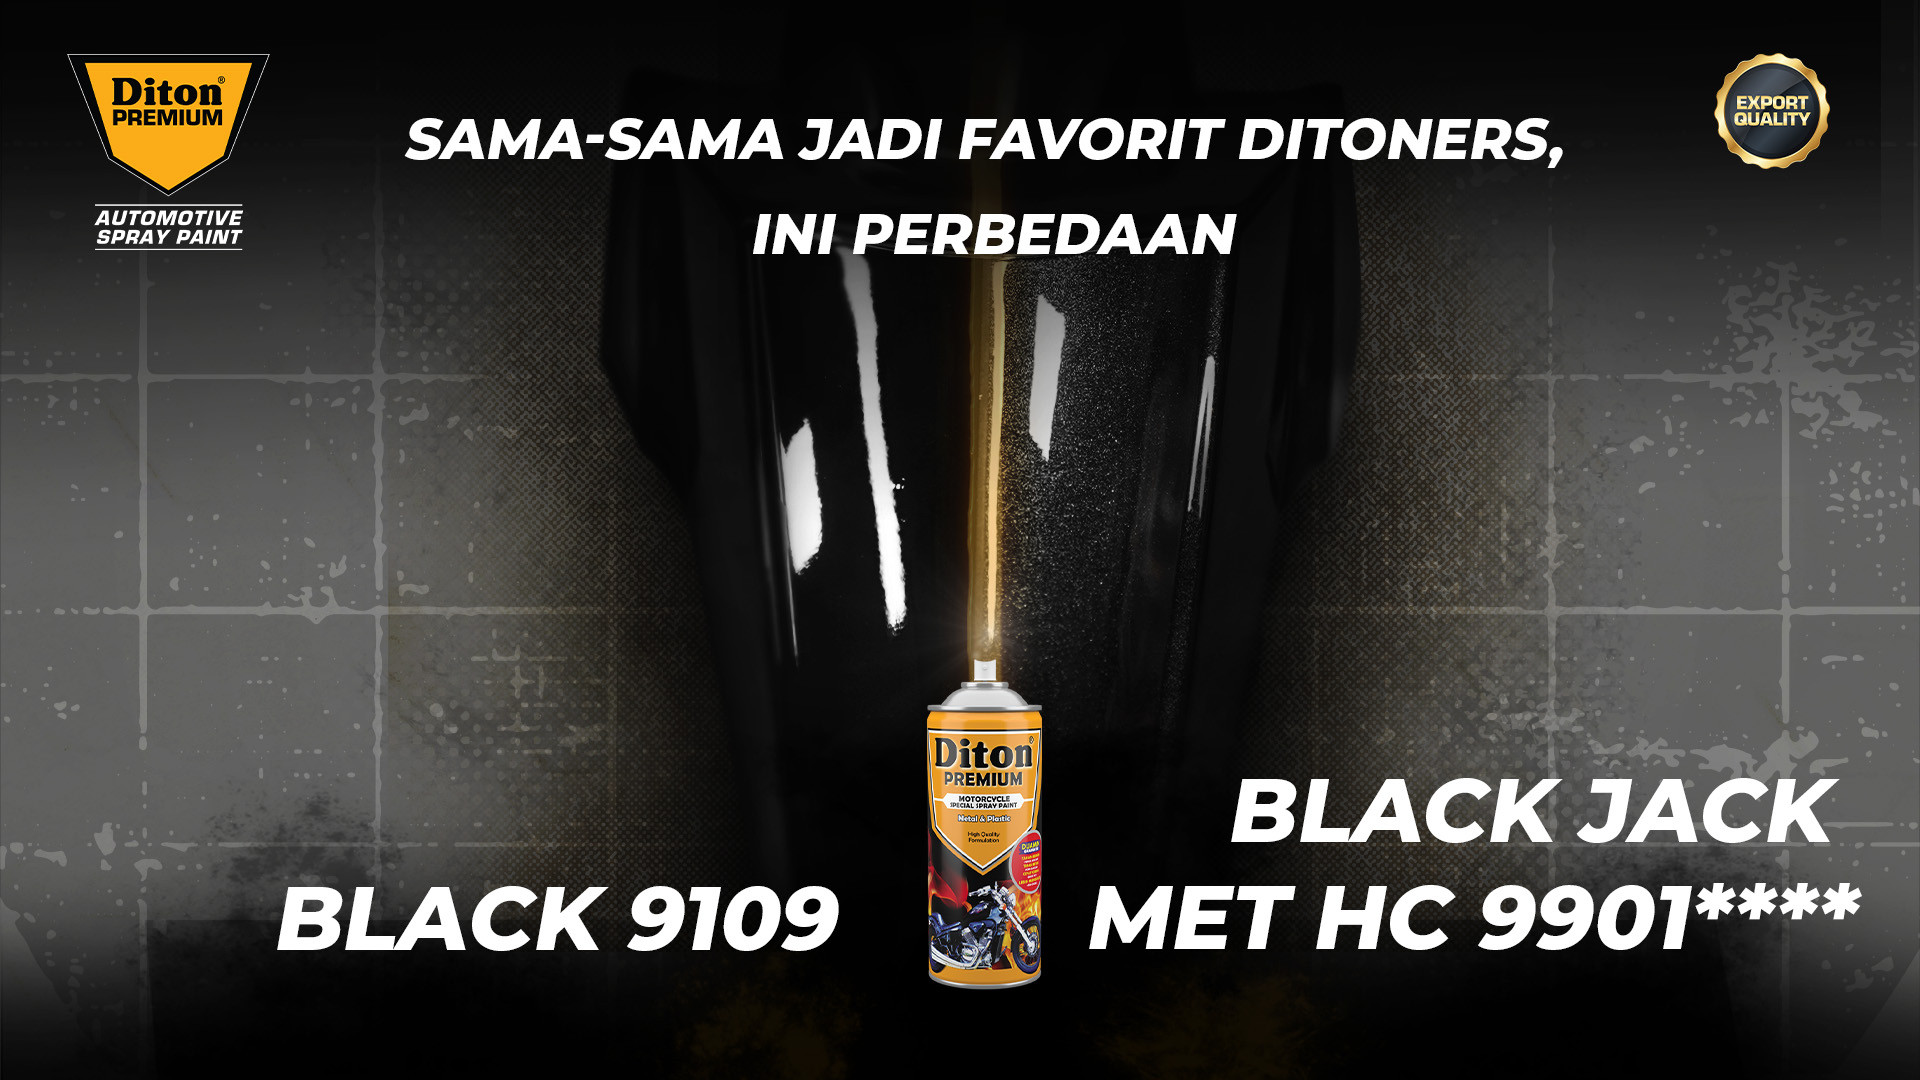 Sama-sama Jadi Favorit Ditoners, Ini Perbedaan Black 9109 dan Black Jack Met HC 9901****